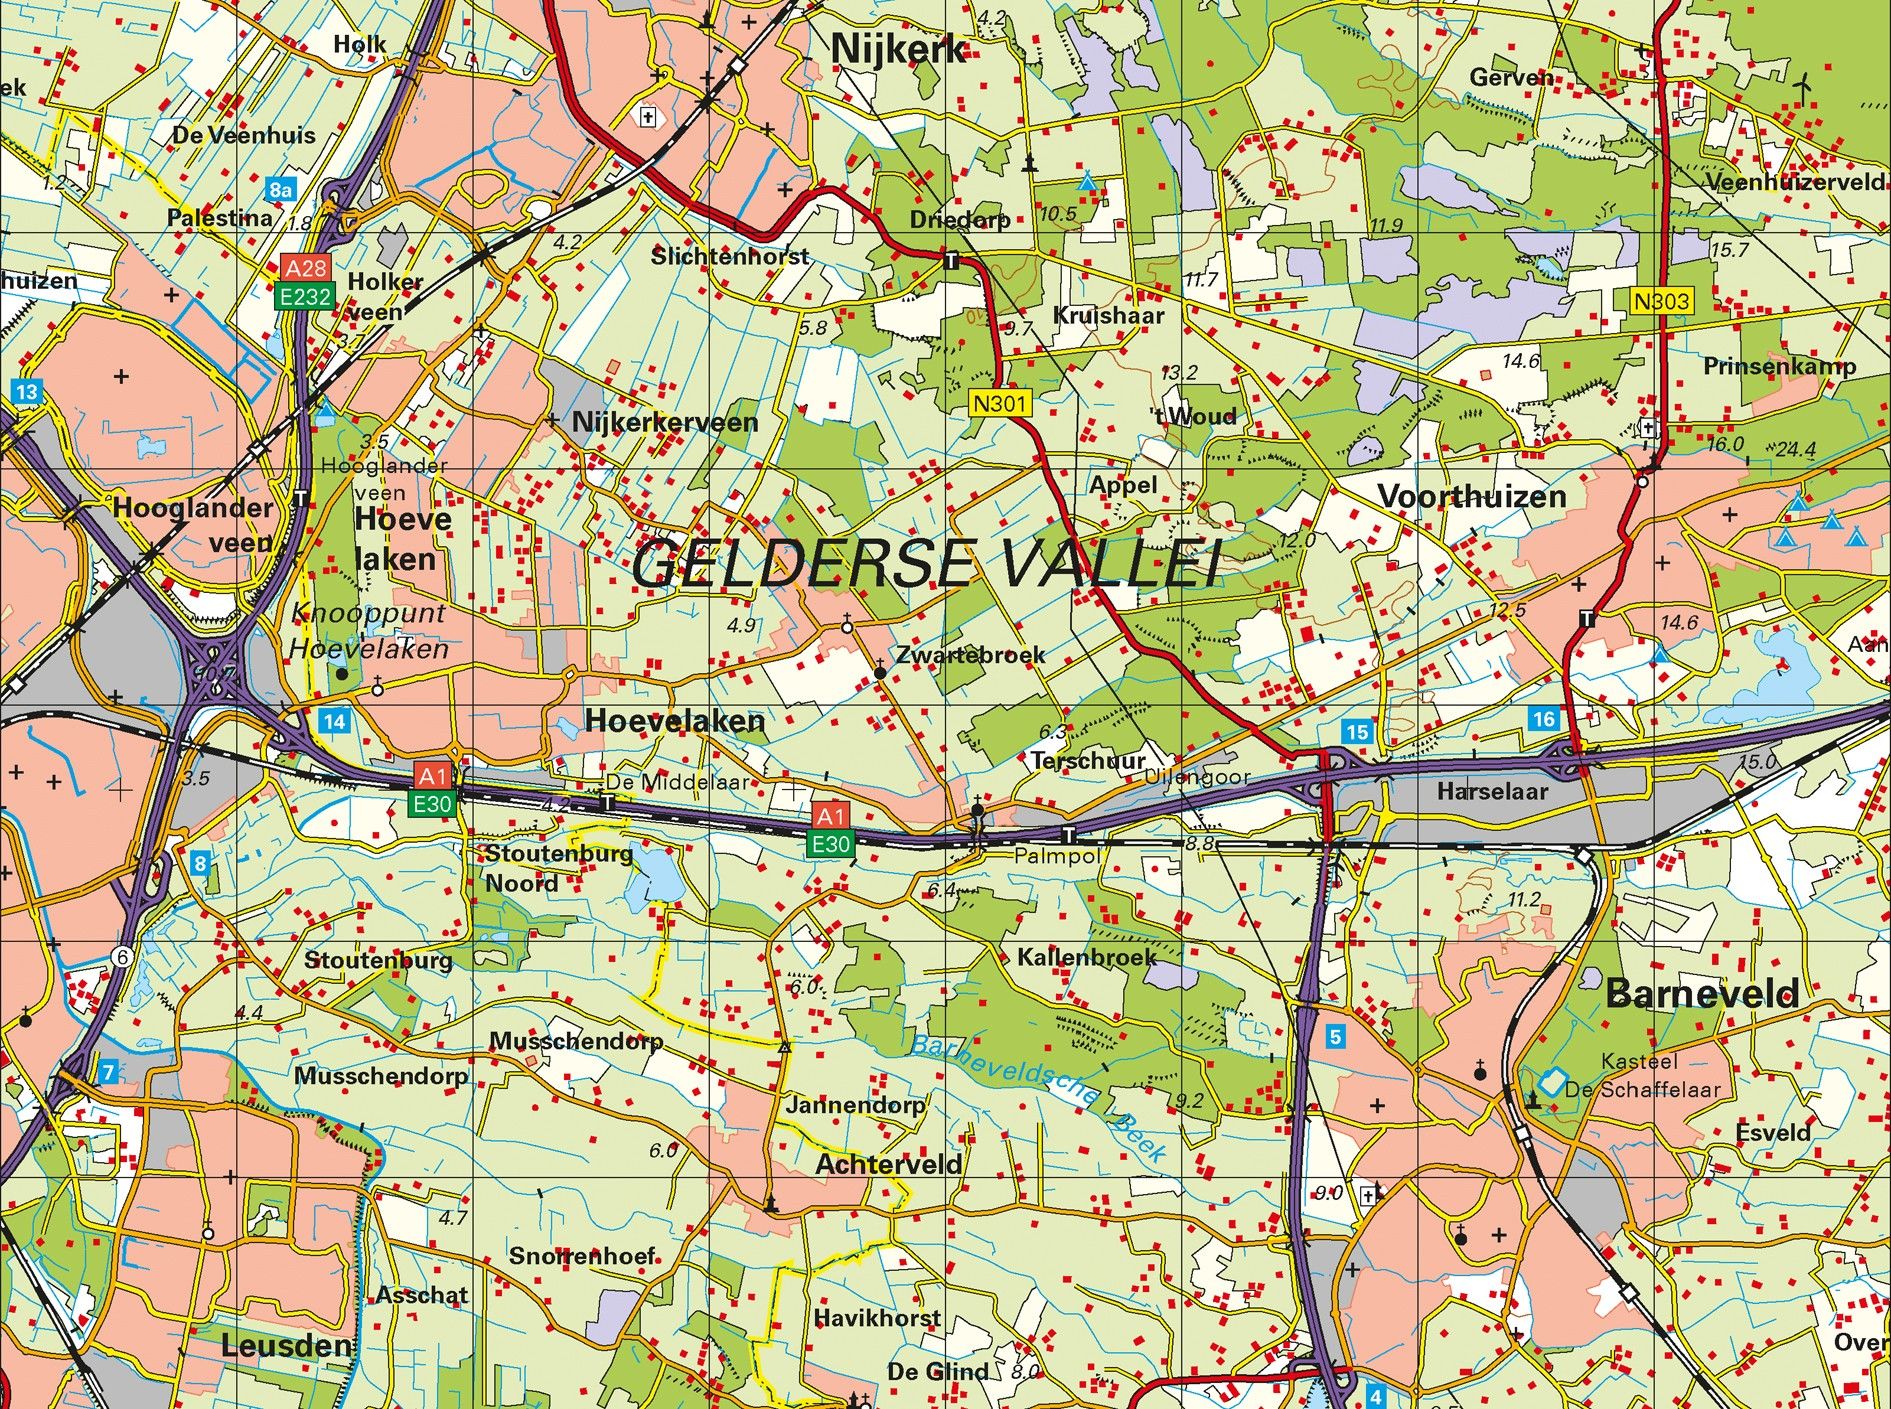 Topografische Provincie kaart Gelderland 1:100.000